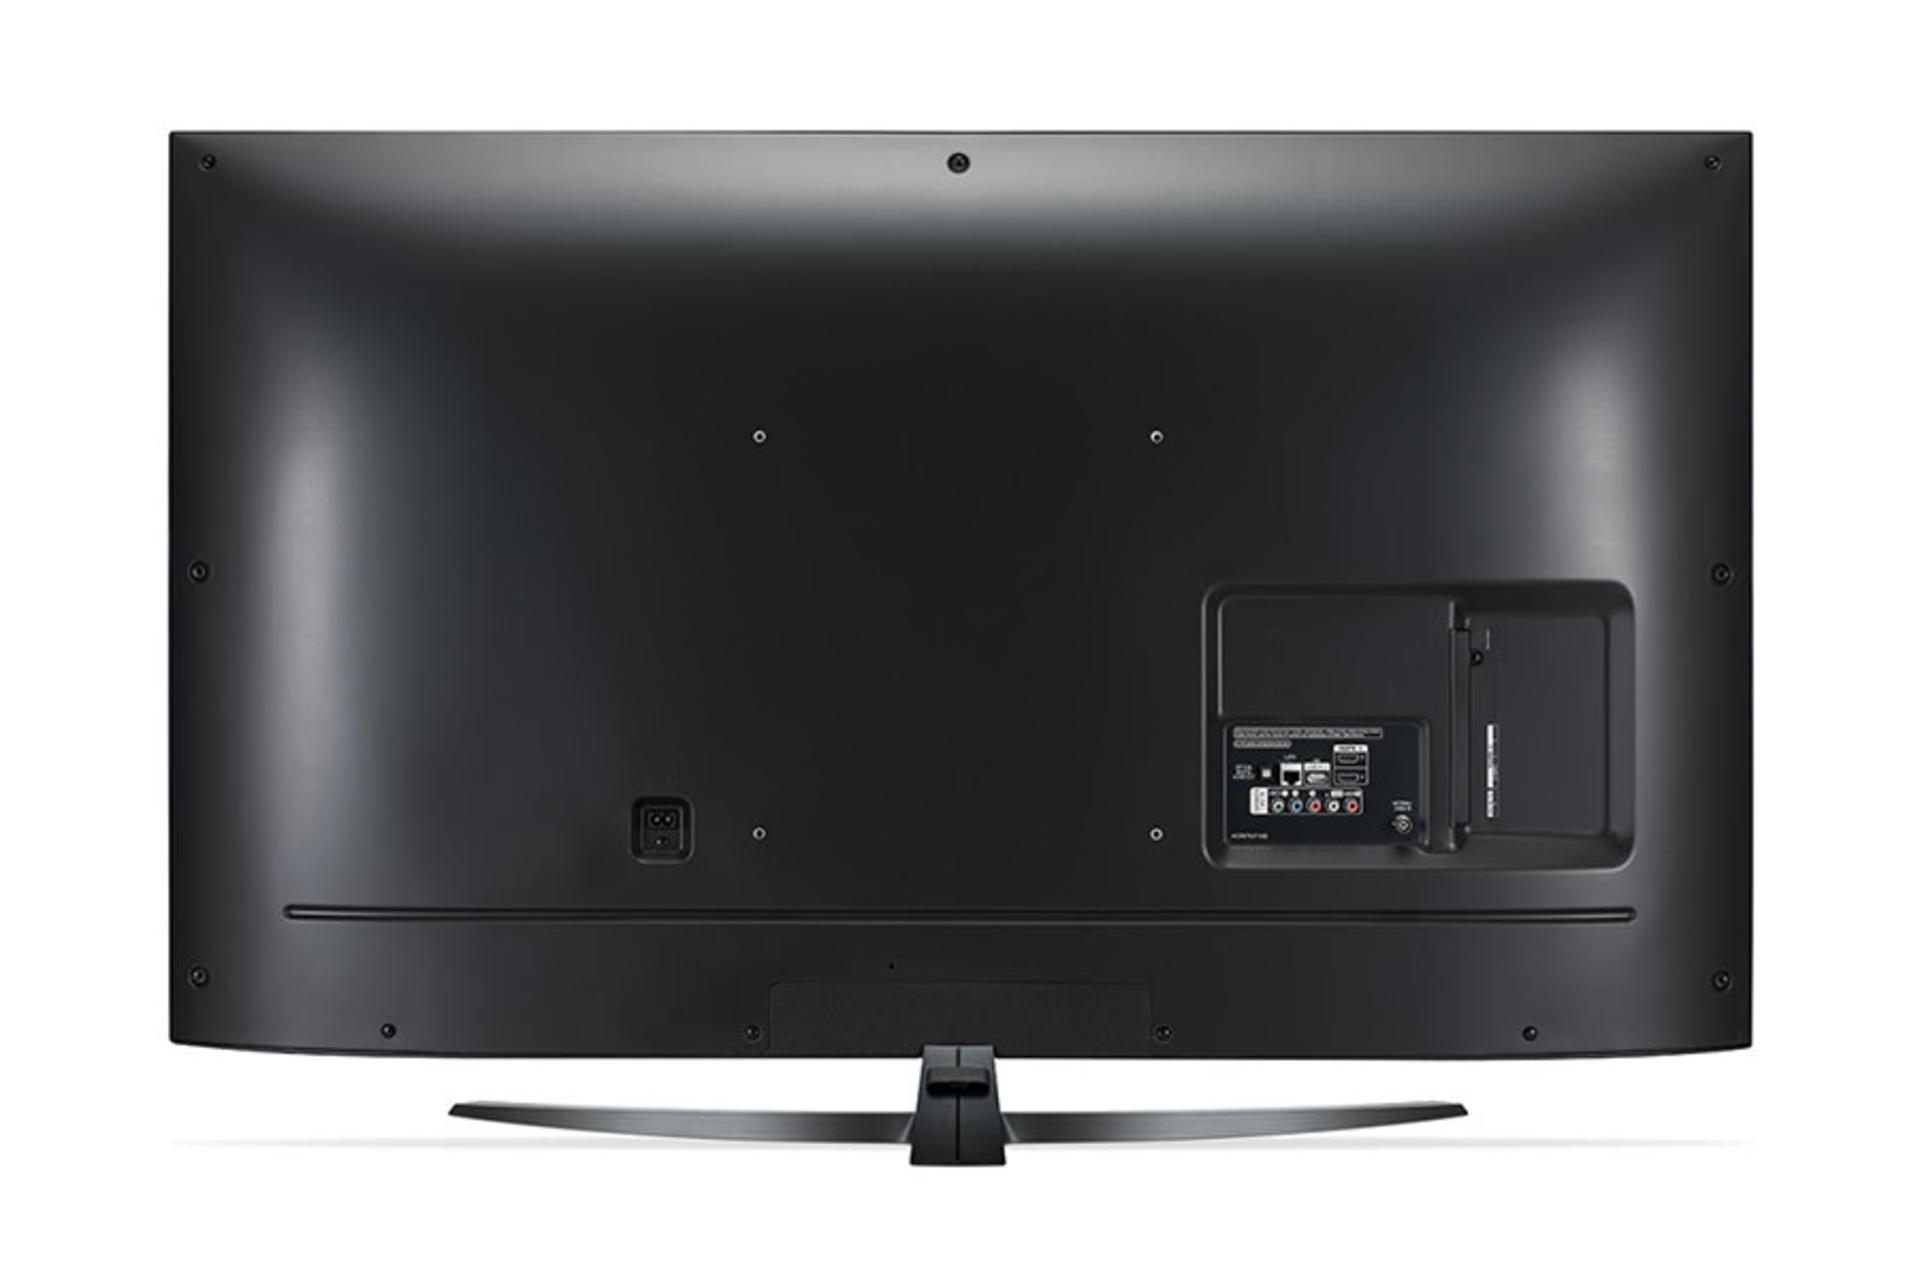 نمای طراحی پشت تلویزیون ال جی UM7660 مدل 55 اینچ و نمایش پورت ها / LG 55UM7660